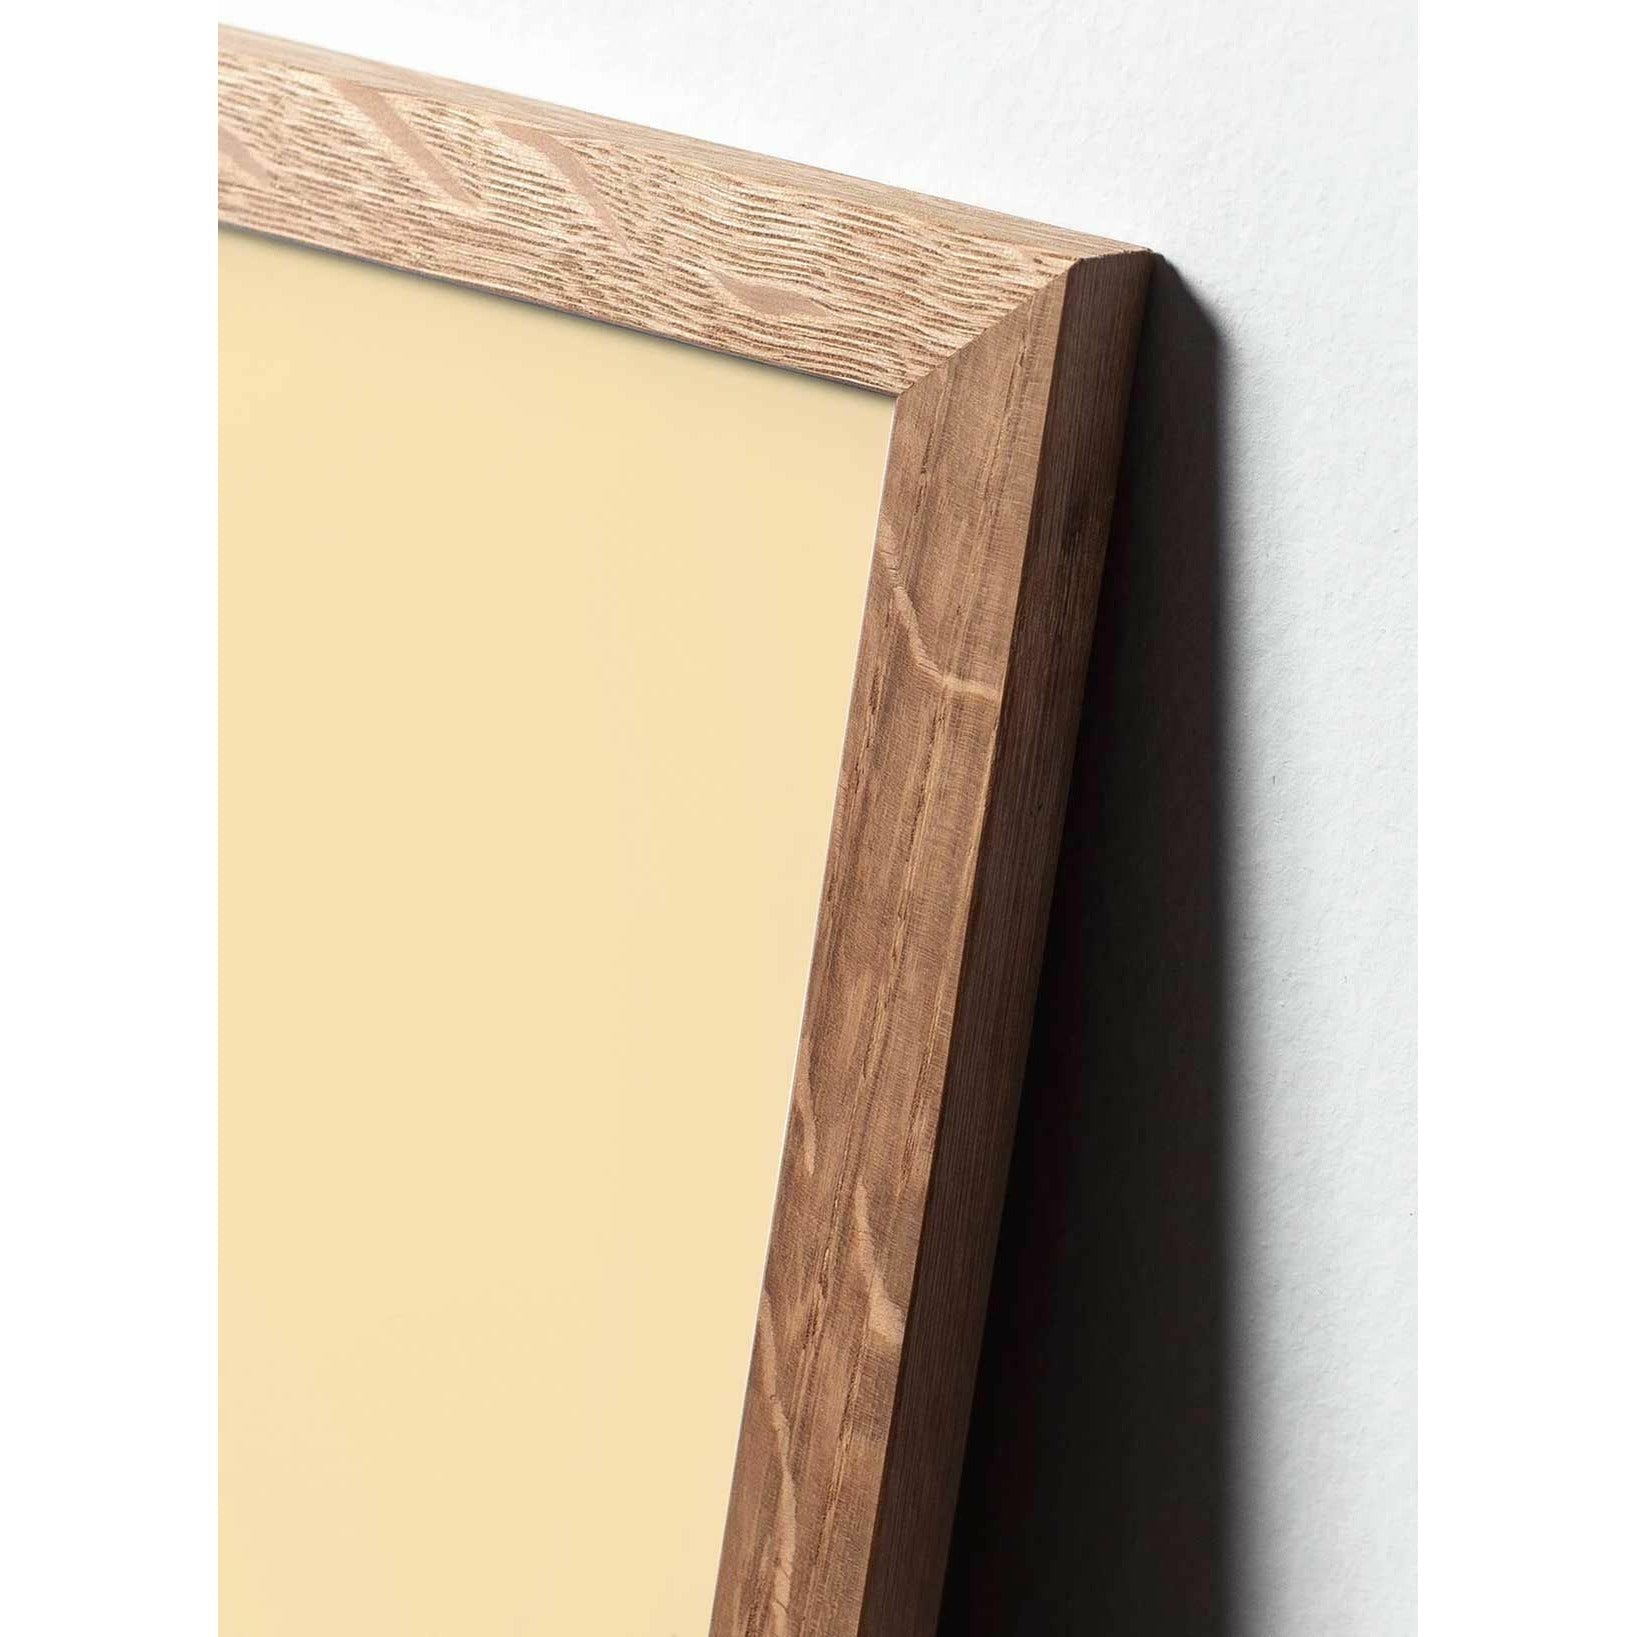 Póster de línea Swan de creación, marco de madera clara A5, fondo blanco